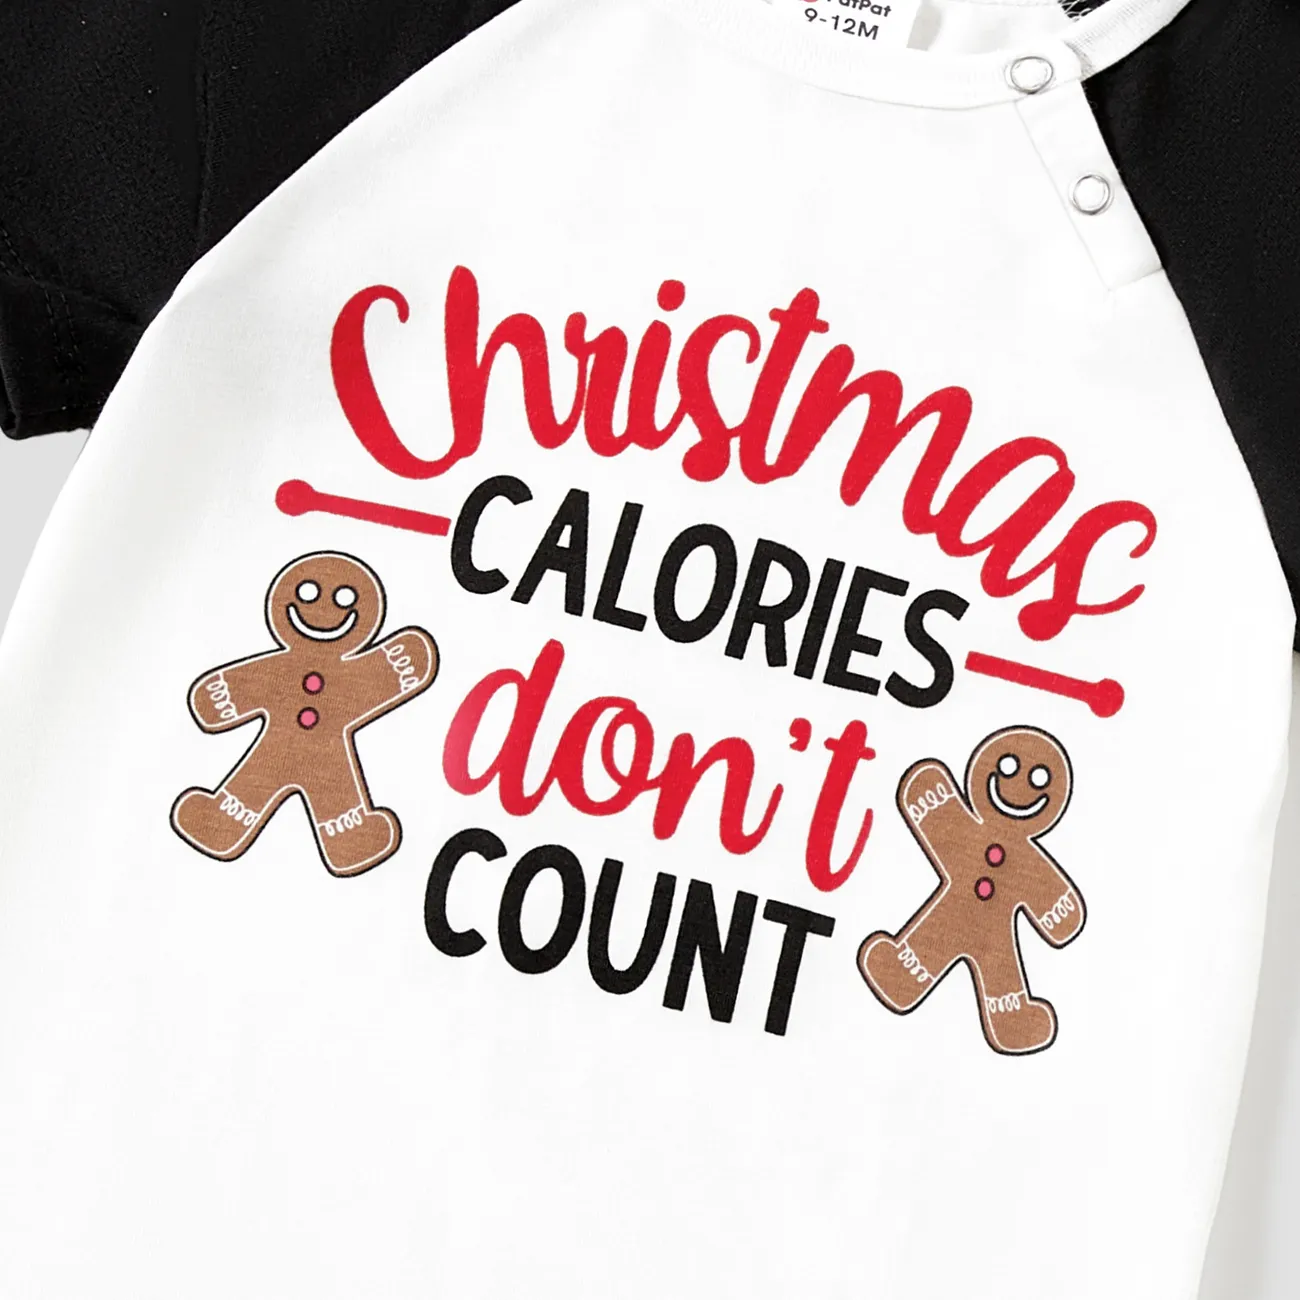 Weihnachten Familien-Looks Kurzärmelig Familien-Outfits Pyjamas (Flame Resistant) schwarz big image 1